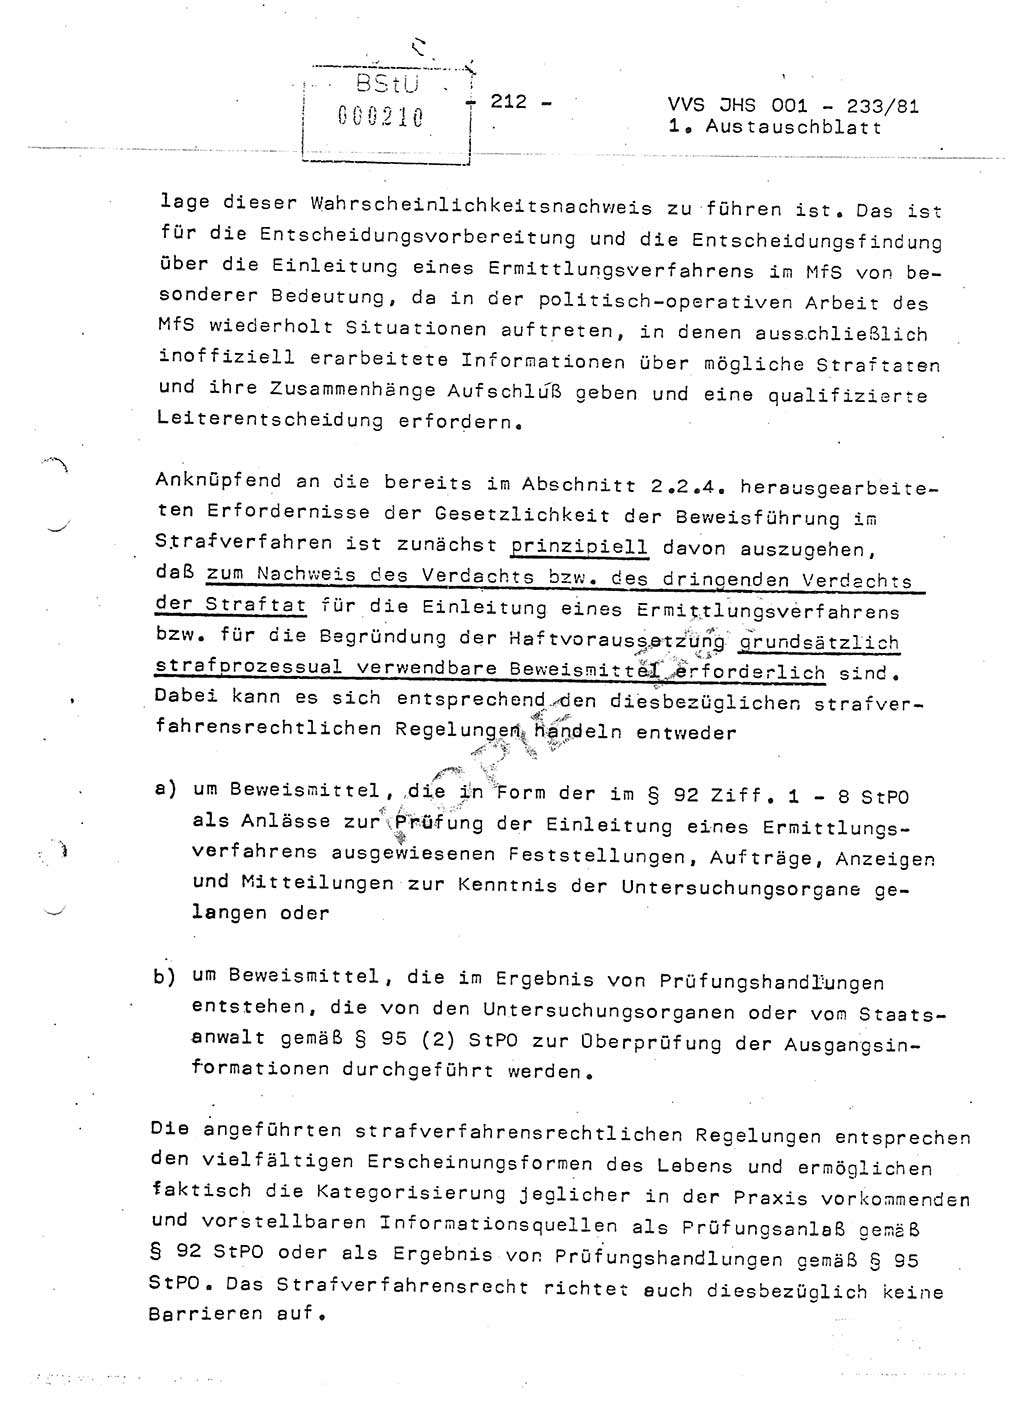 Dissertation Oberstleutnant Horst Zank (JHS), Oberstleutnant Dr. Karl-Heinz Knoblauch (JHS), Oberstleutnant Gustav-Adolf Kowalewski (HA Ⅸ), Oberstleutnant Wolfgang Plötner (HA Ⅸ), Ministerium für Staatssicherheit (MfS) [Deutsche Demokratische Republik (DDR)], Juristische Hochschule (JHS), Vertrauliche Verschlußsache (VVS) o001-233/81, Potsdam 1981, Blatt 212 (Diss. MfS DDR JHS VVS o001-233/81 1981, Bl. 212)